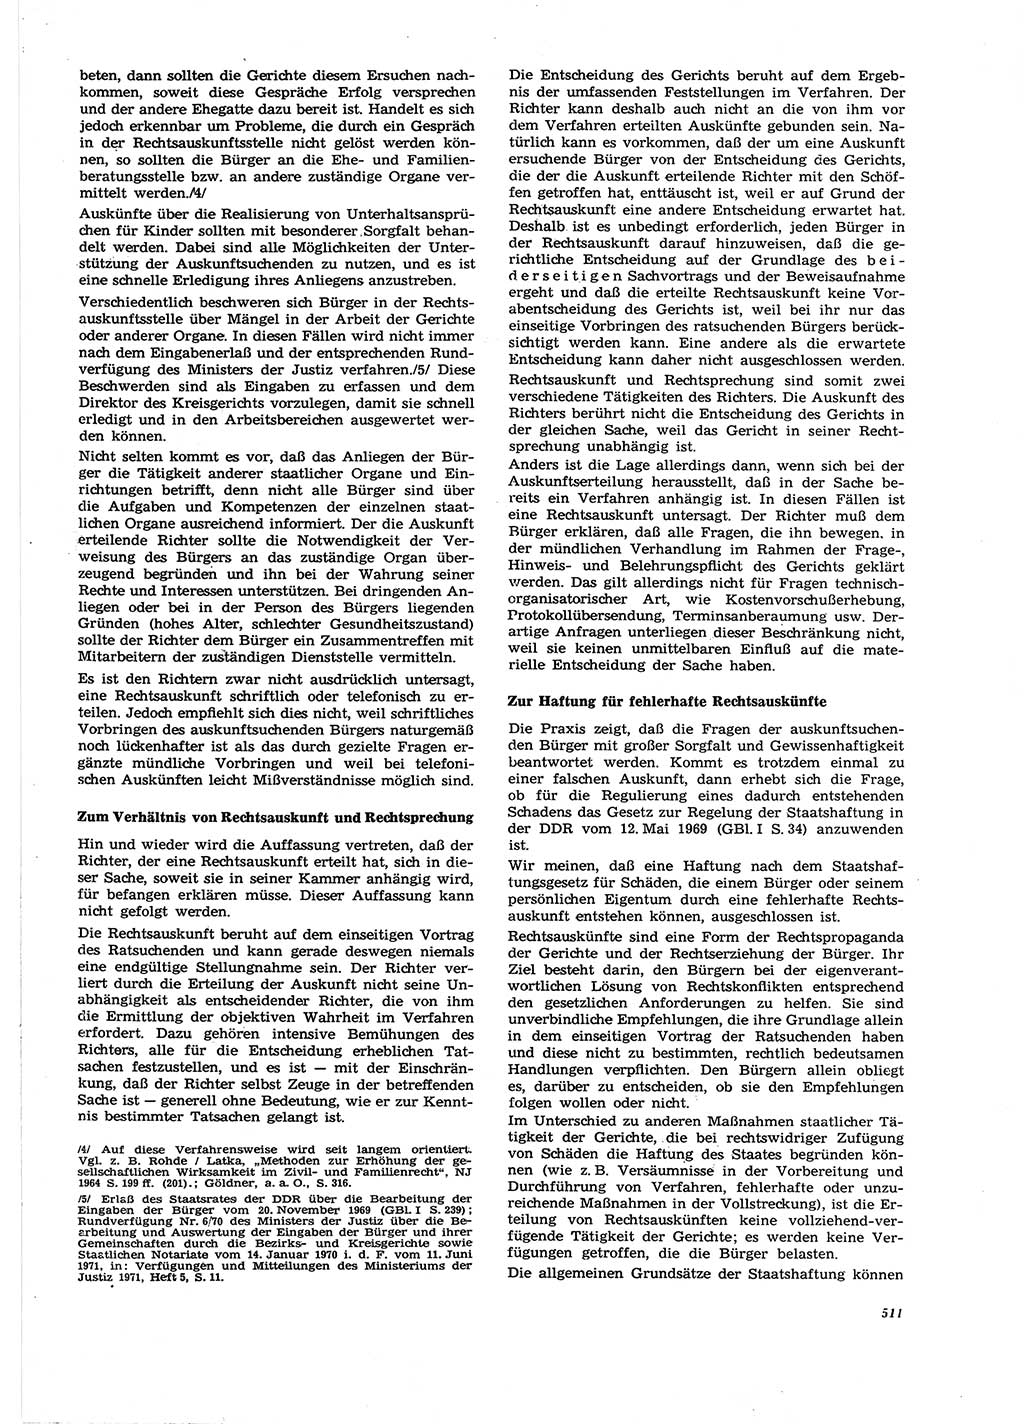 Neue Justiz (NJ), Zeitschrift für Recht und Rechtswissenschaft [Deutsche Demokratische Republik (DDR)], 27. Jahrgang 1973, Seite 511 (NJ DDR 1973, S. 511)